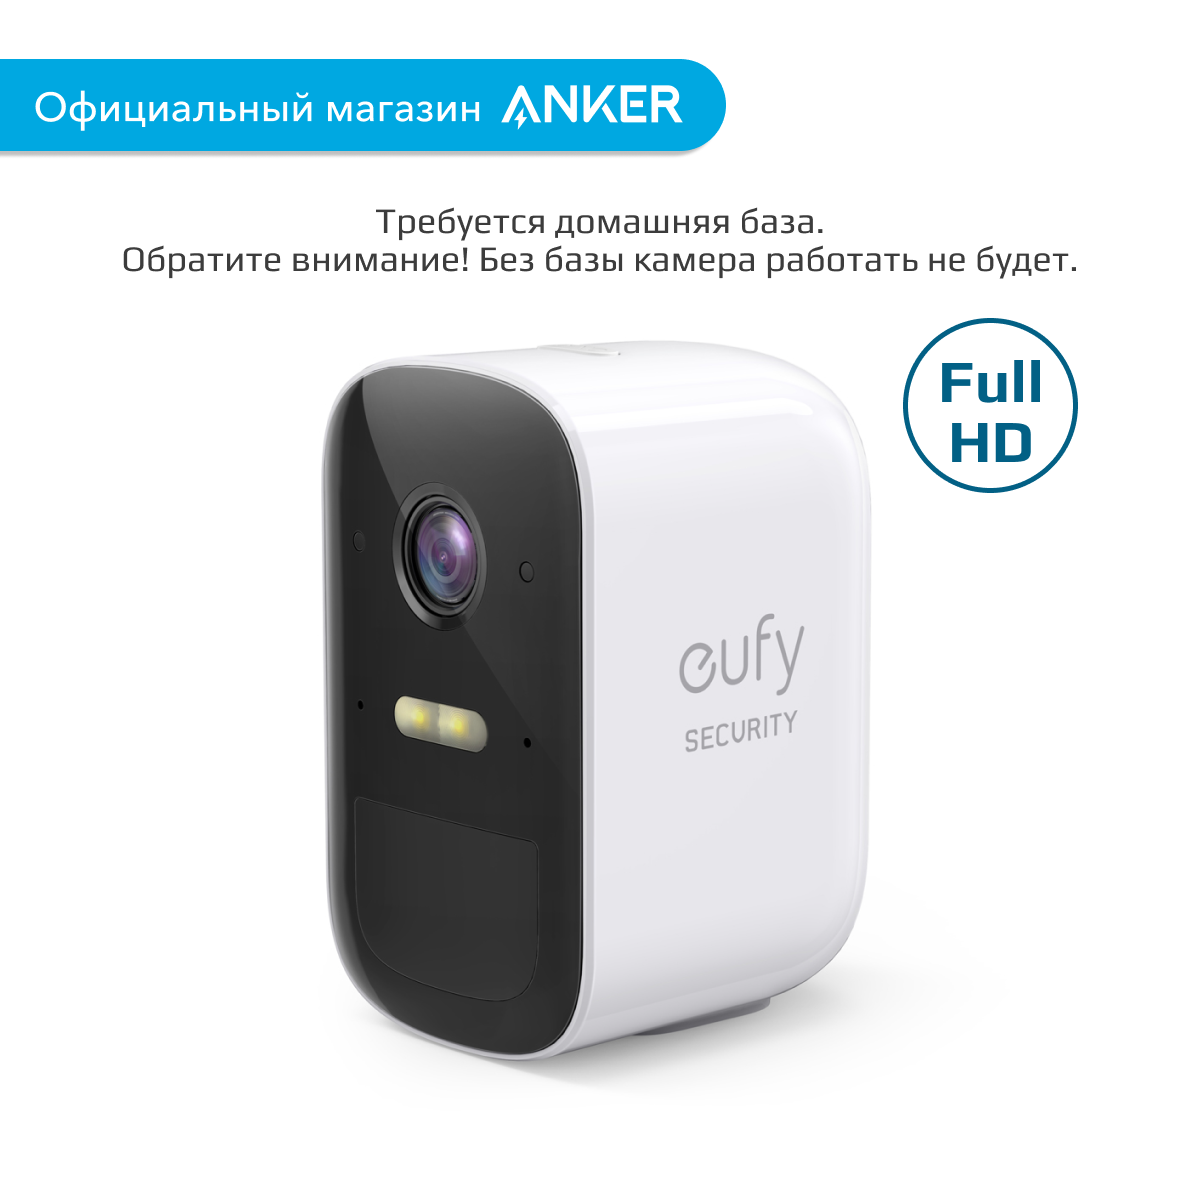 Дополнительная камера видеонаблюдения eufy Eufycam 2C / Видеокамера с микрофоном для дома и дачи (T8113)